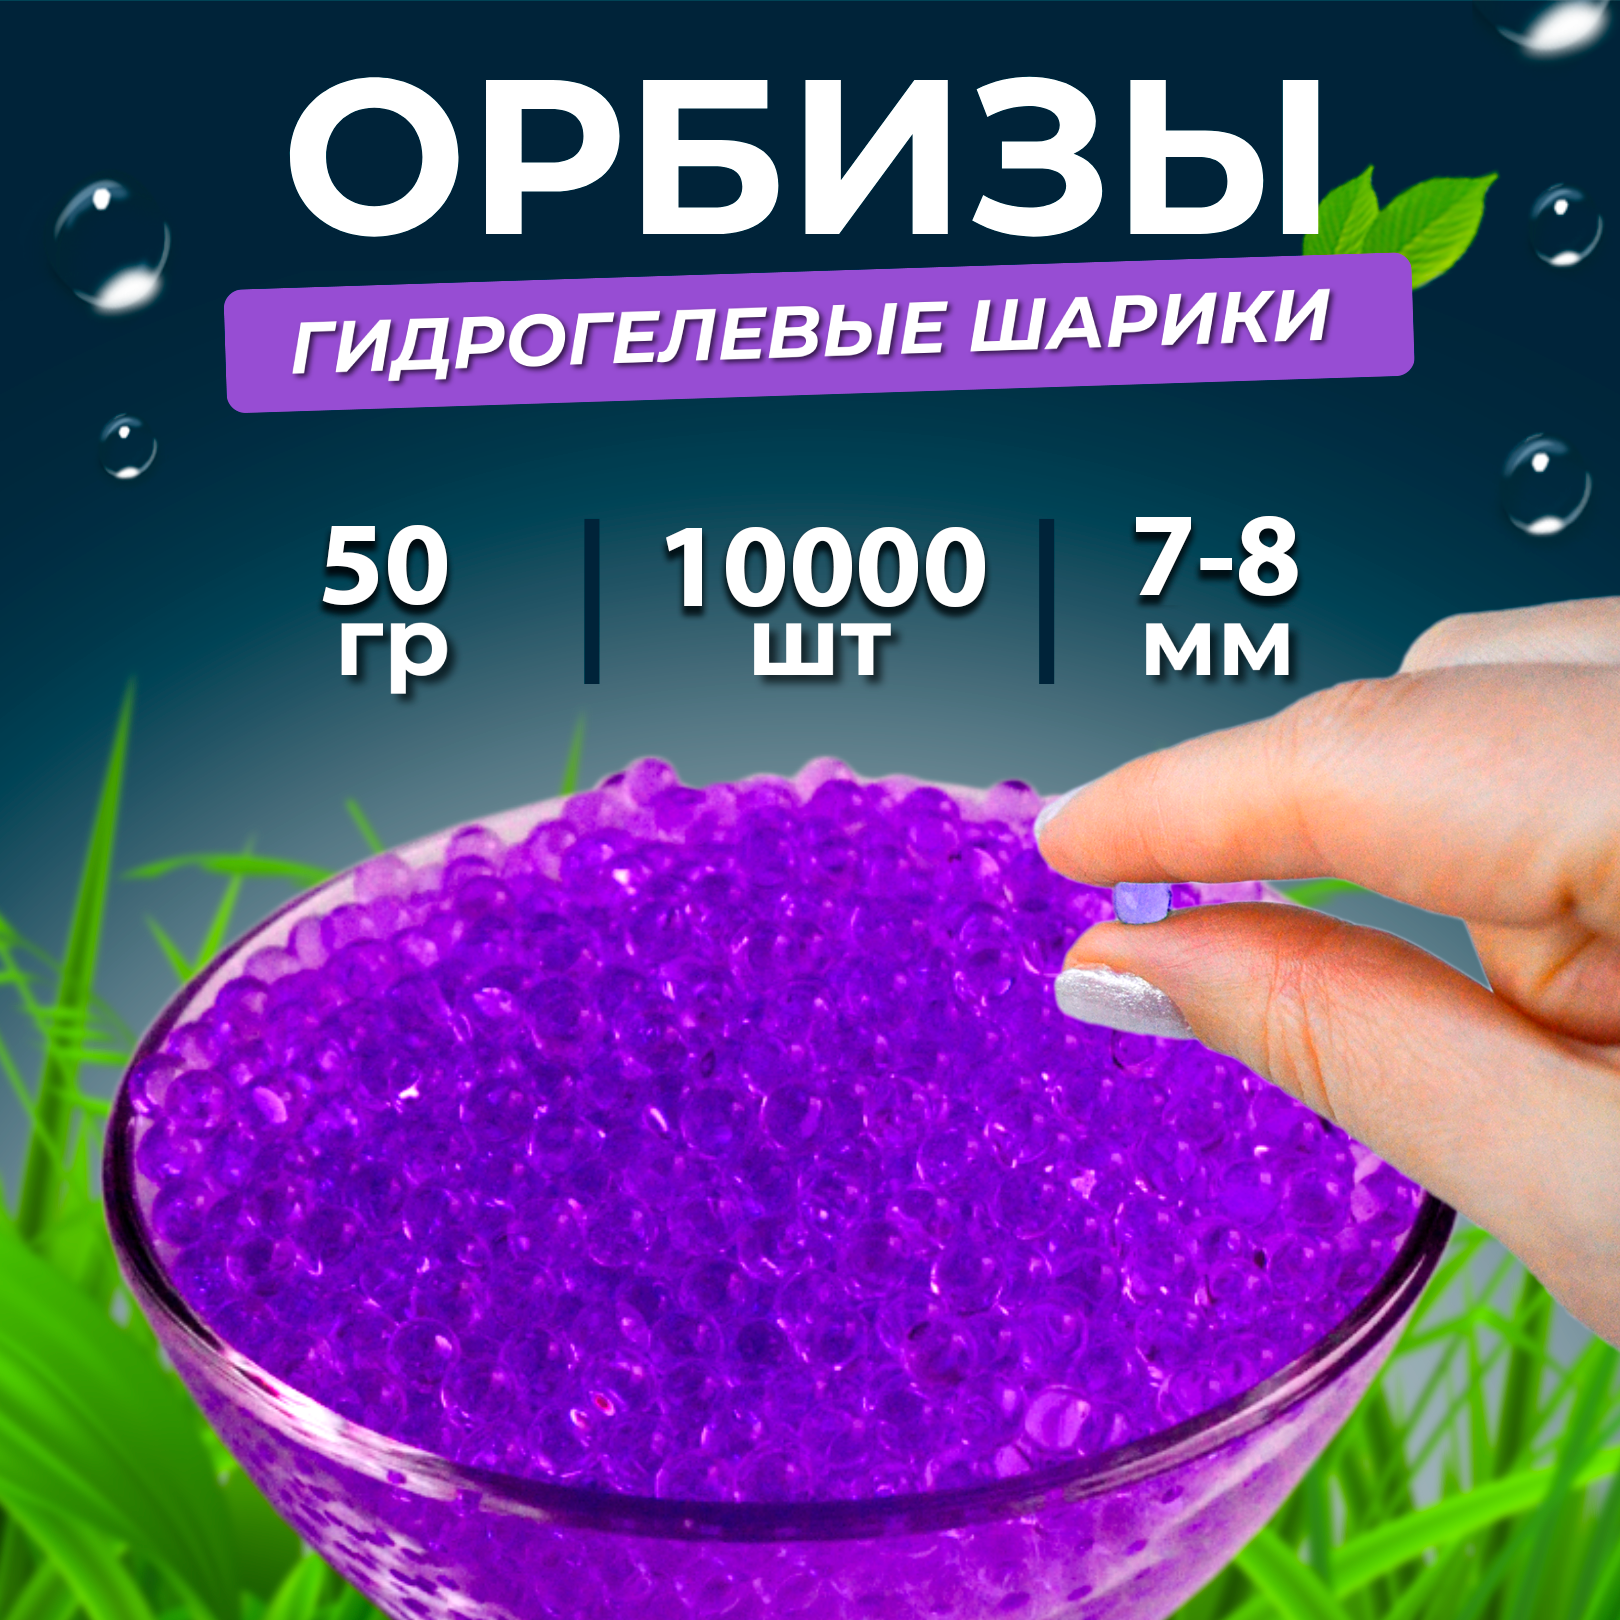 Орбизы, гидрогелевые шарики, 50 г, 7-8 мм, 10.000 шт, фиолетовые